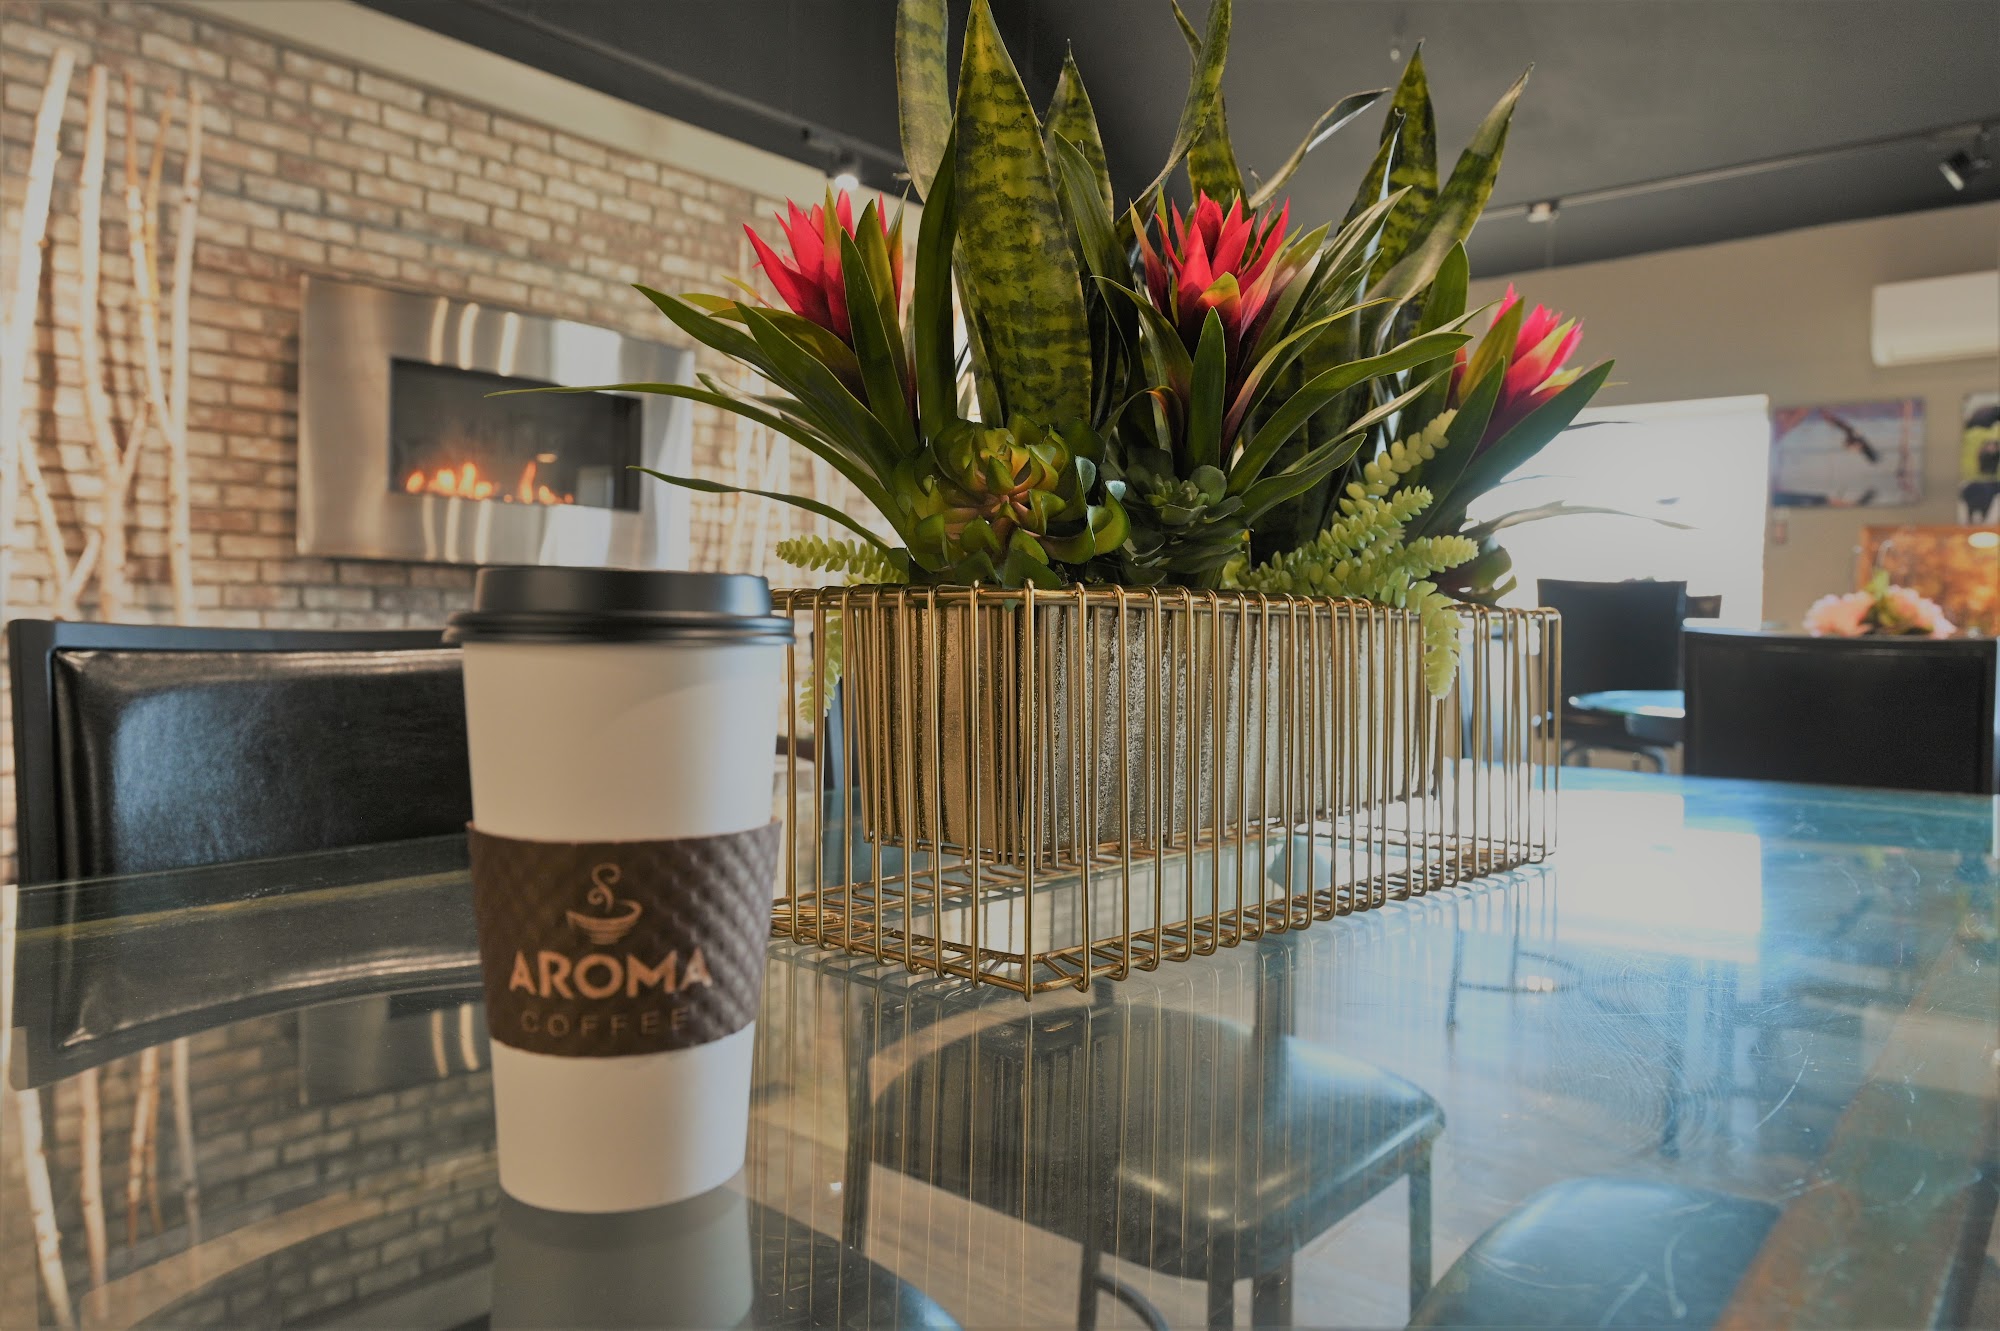 Aroma Coffee & Cafe